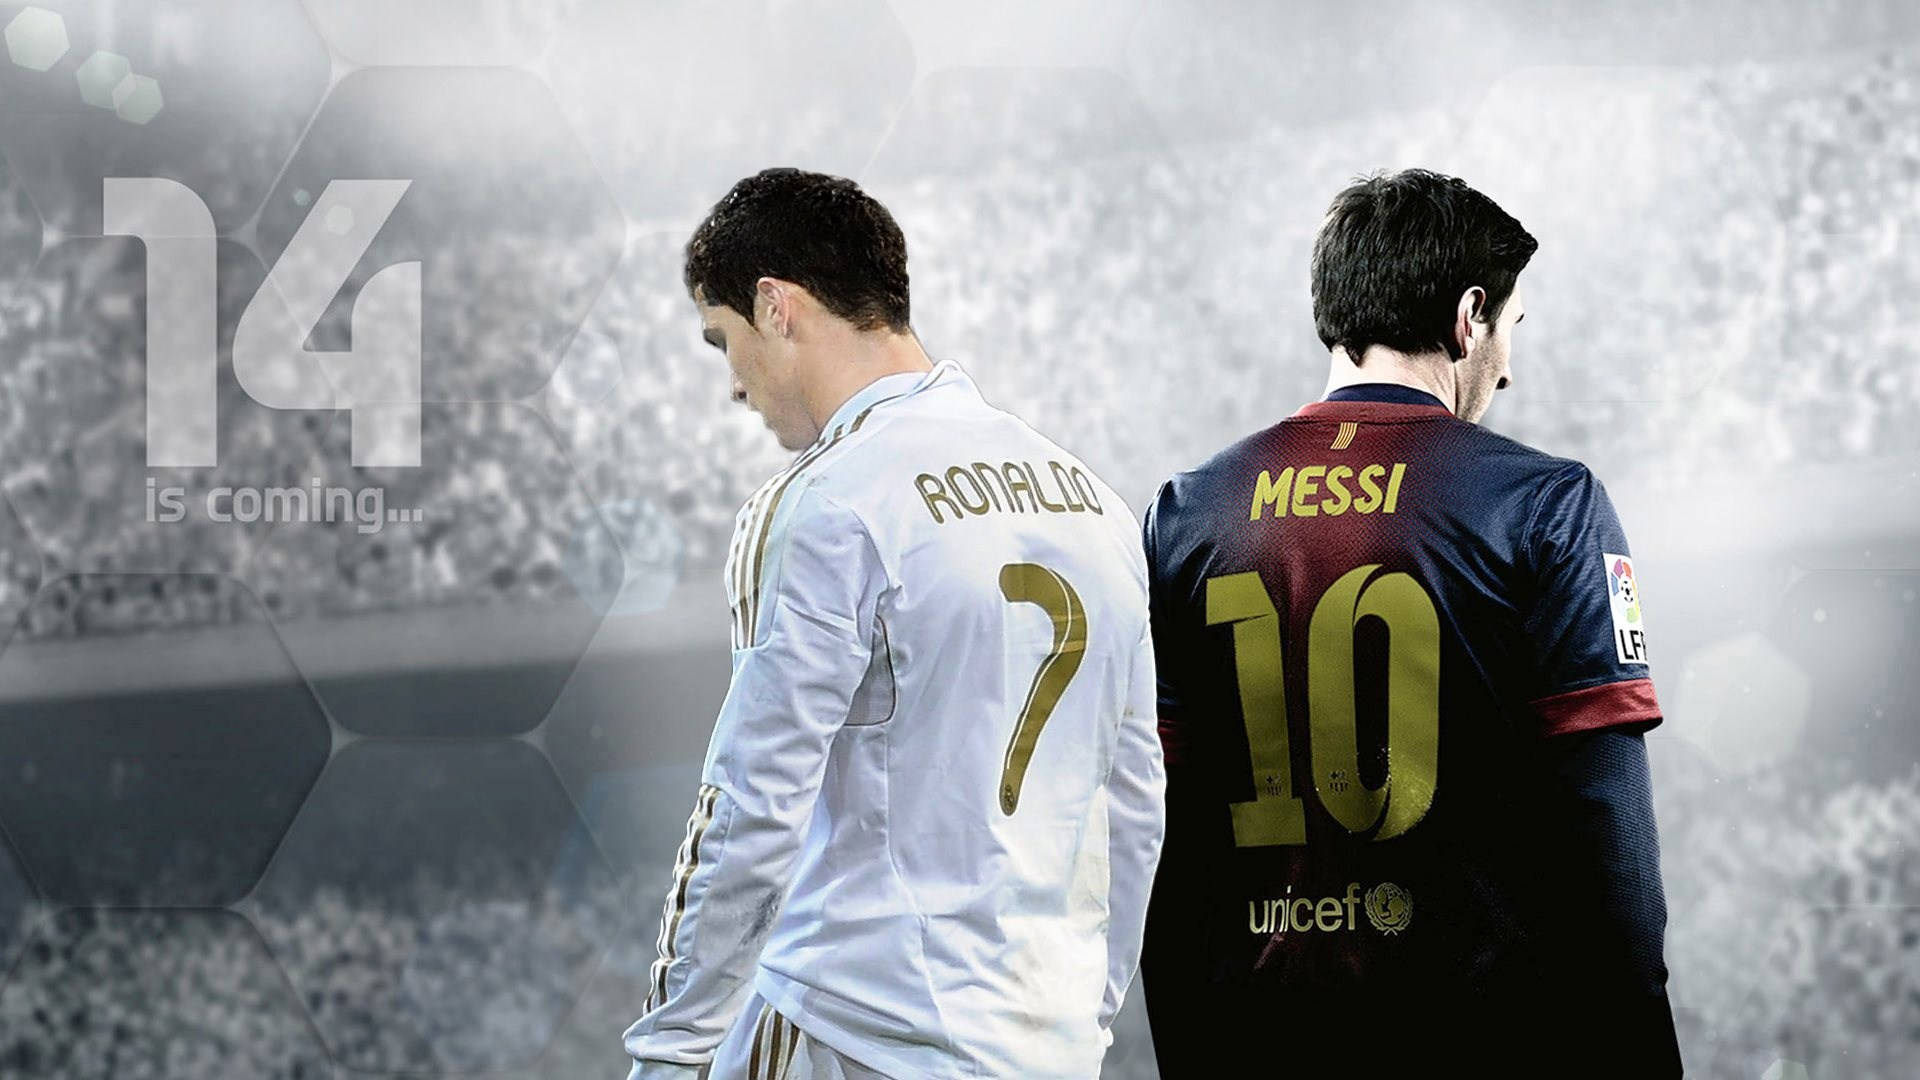 Coolefußballspieler Messi Und Ronaldo Wallpaper